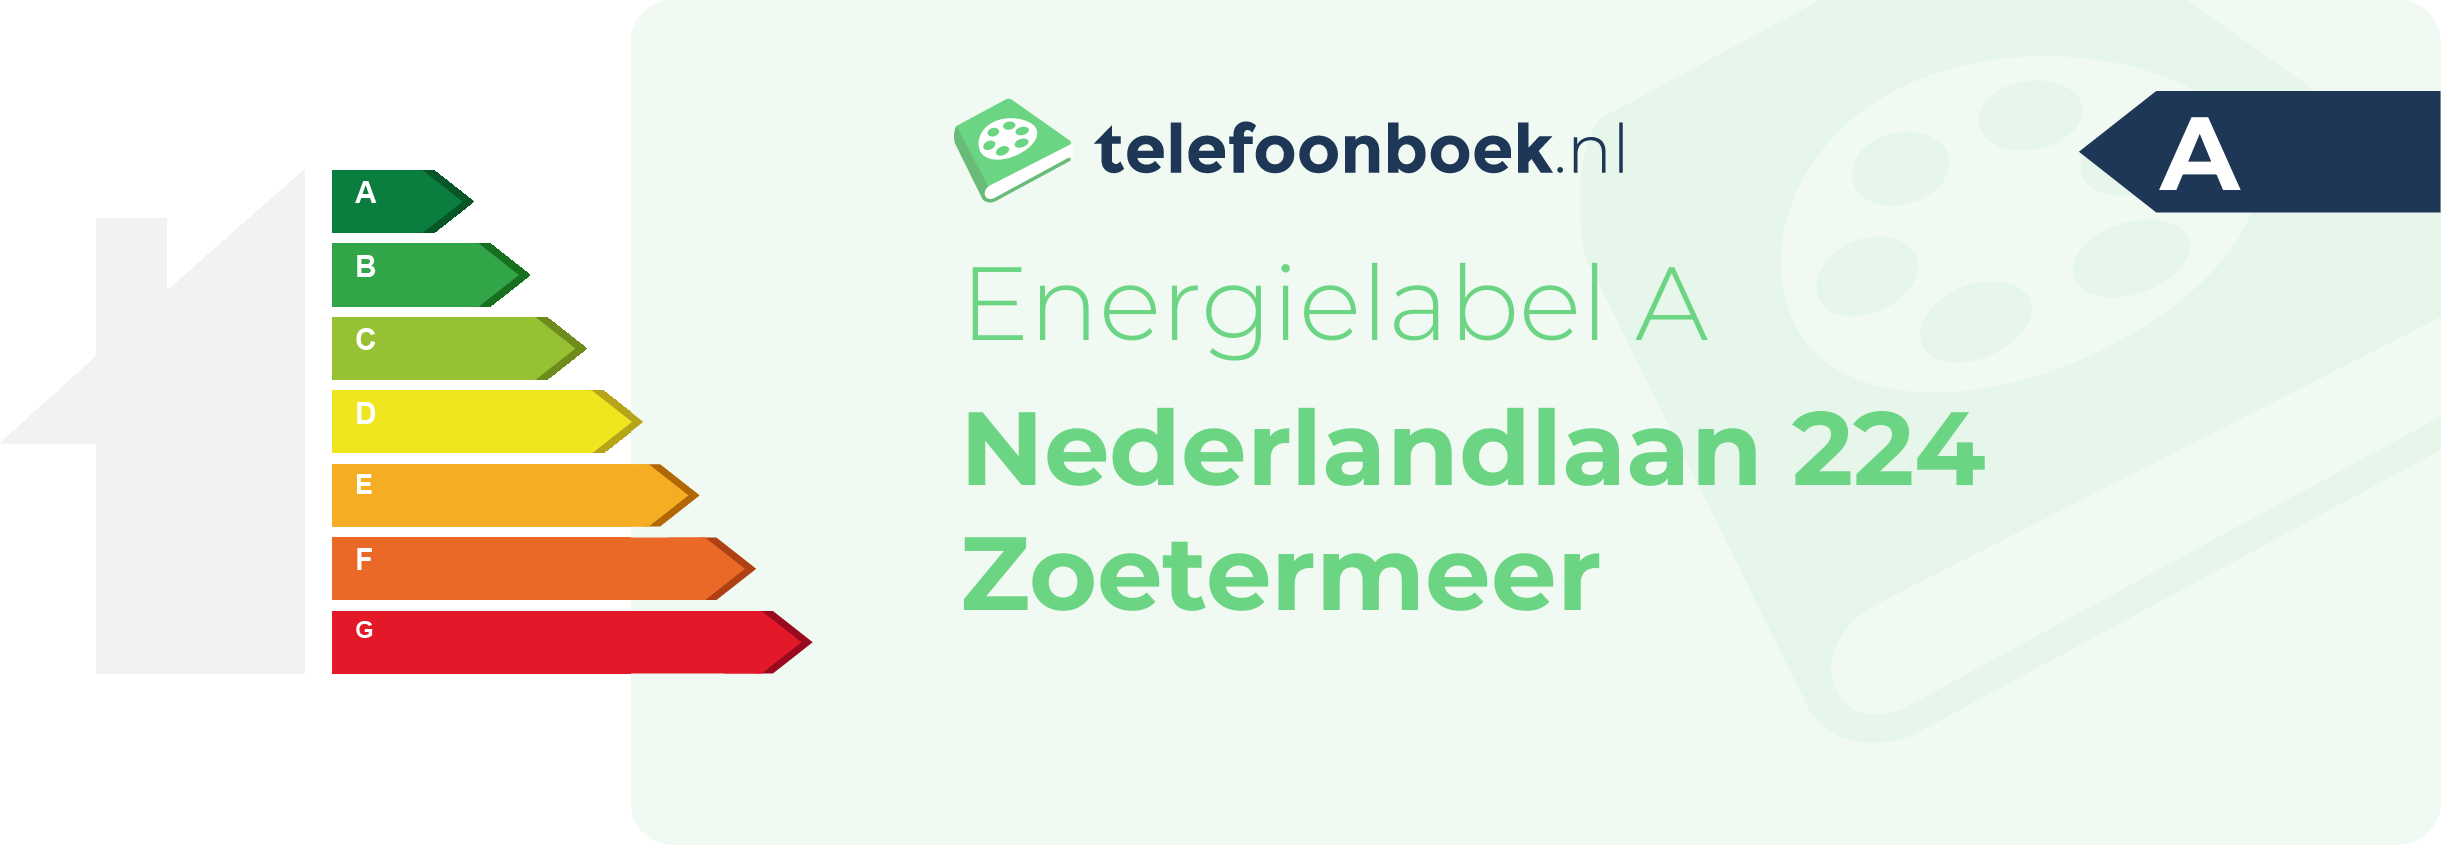 Energielabel Nederlandlaan 224 Zoetermeer